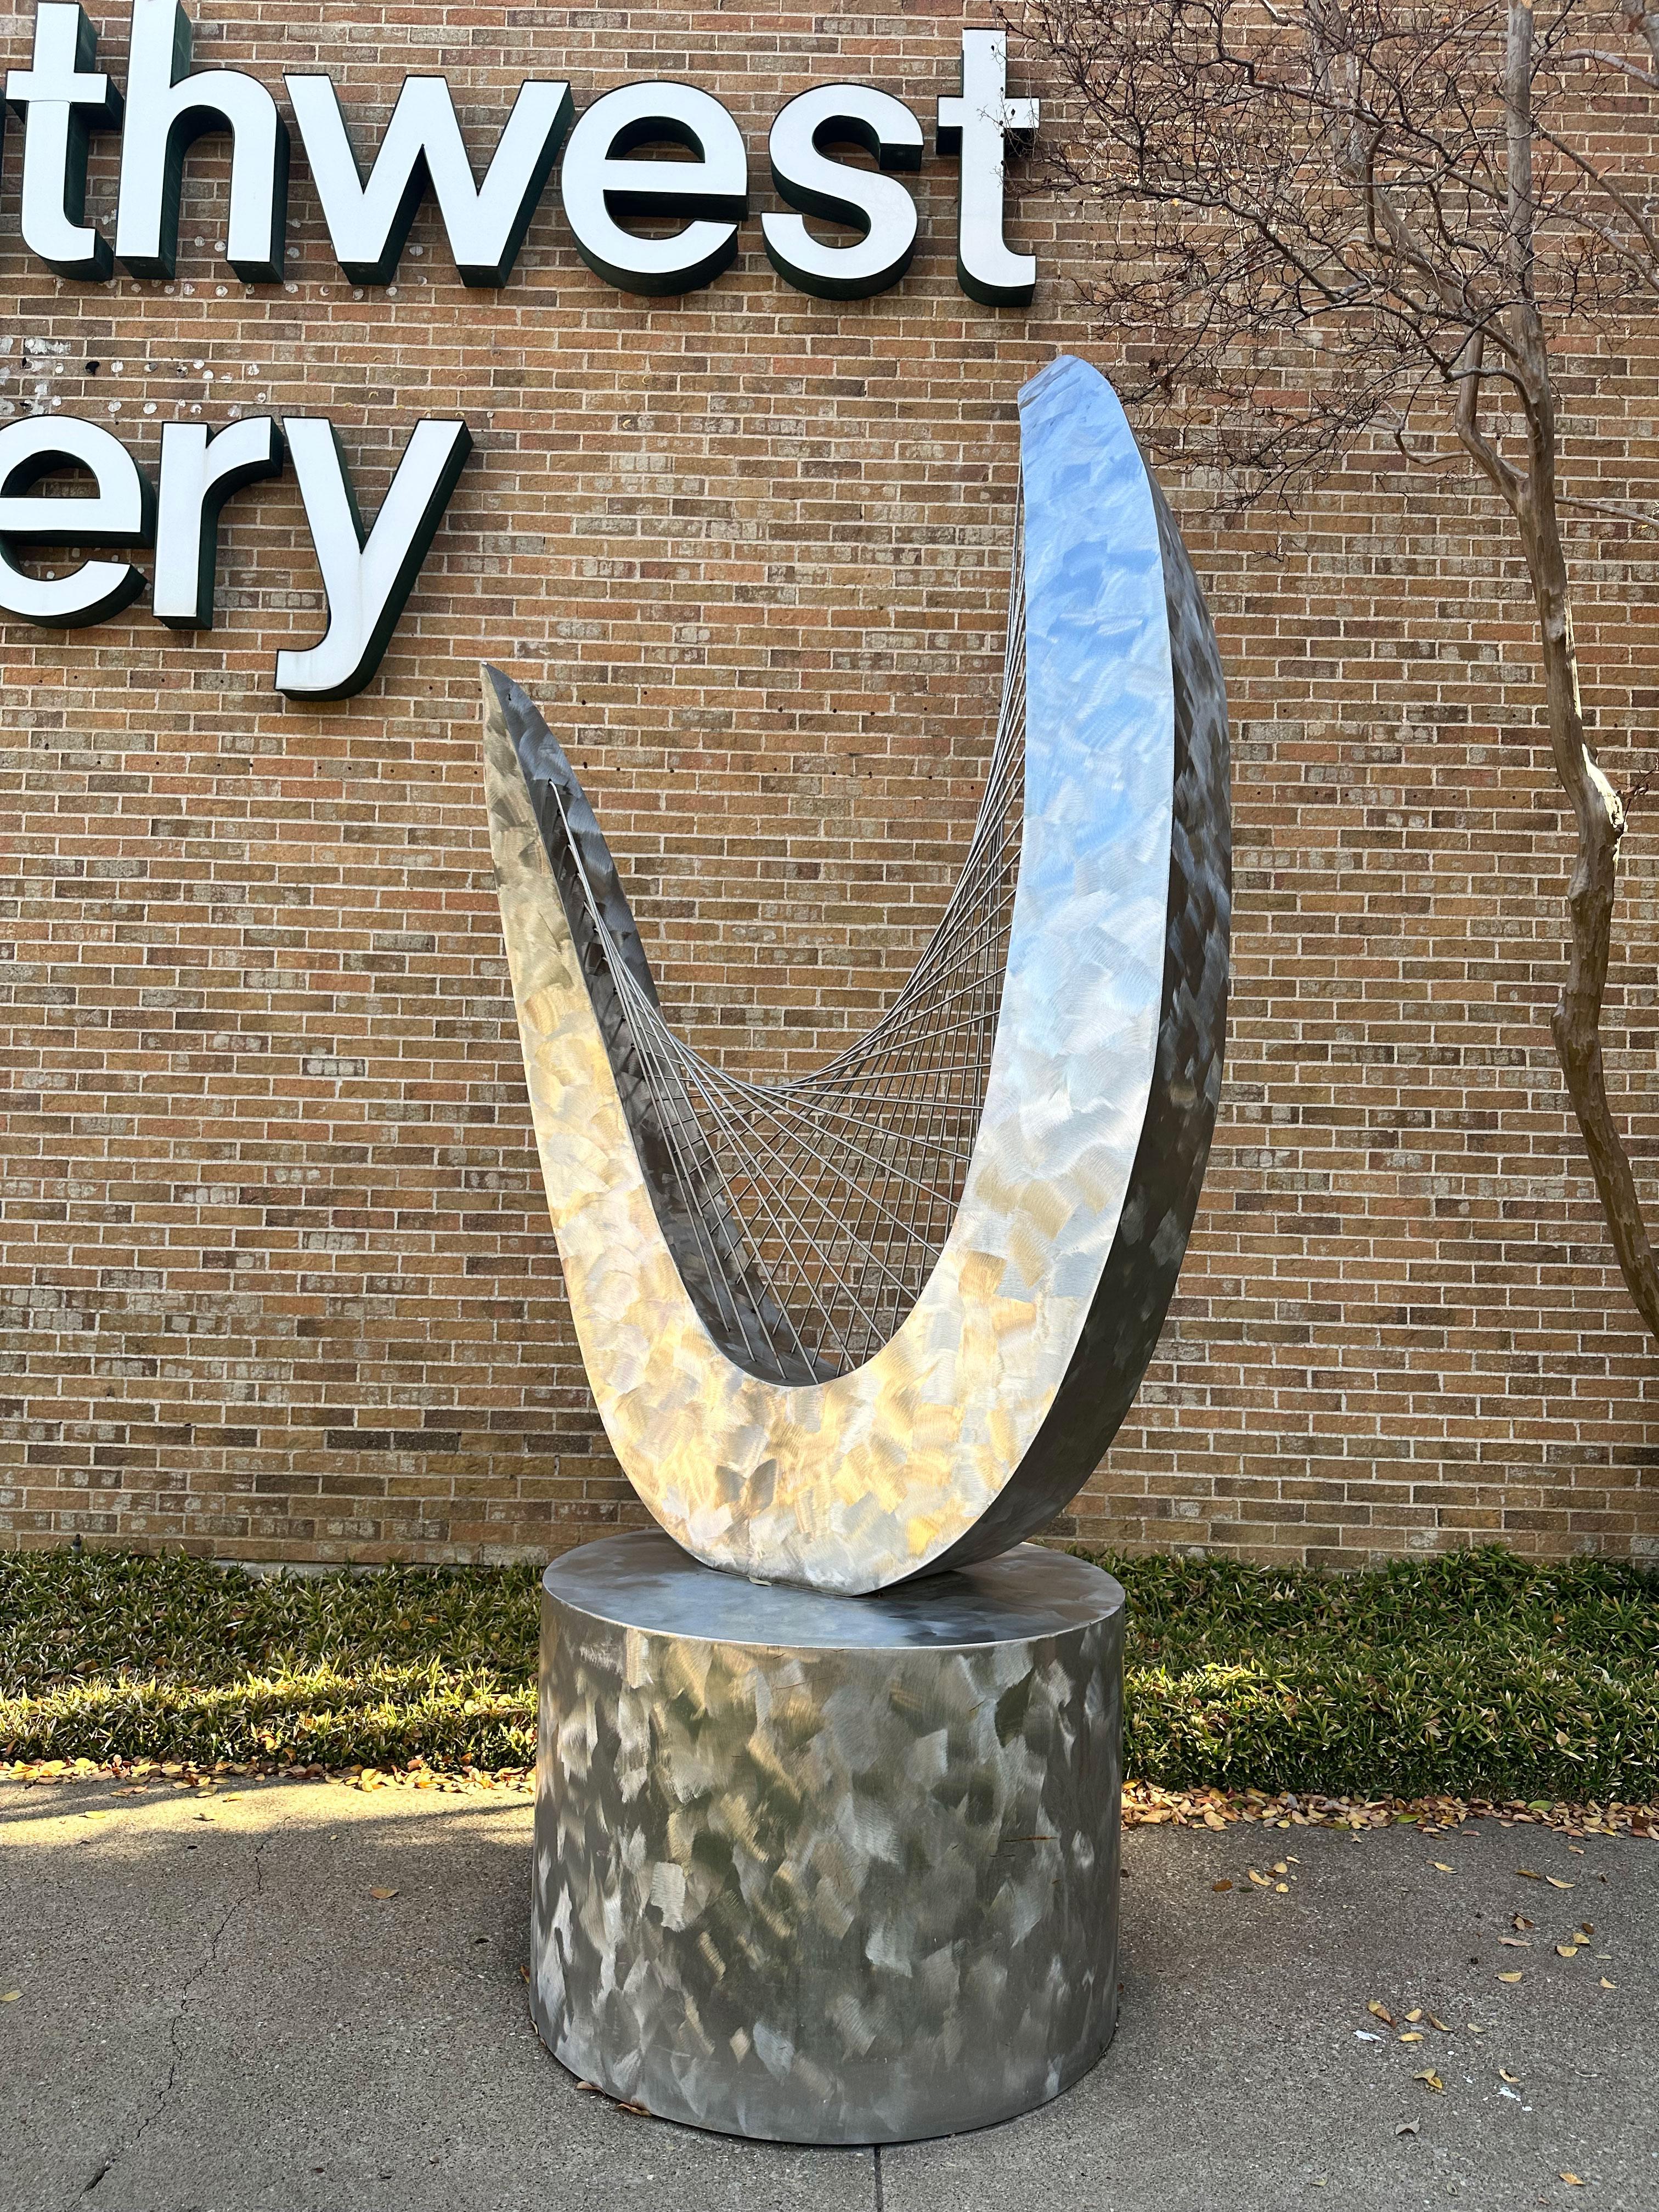 "Hyperbolic Paraboloid - Harp"" von Jerry Dane Sanders ist eine große Skulptur aus gebürstetem Edelstahl mit den Maßen 120x48x48. Es handelt sich um eine atemberaubende Edelstahlskulptur in Form eines verdrehten U mit dünnen Stahlstücken, die in der